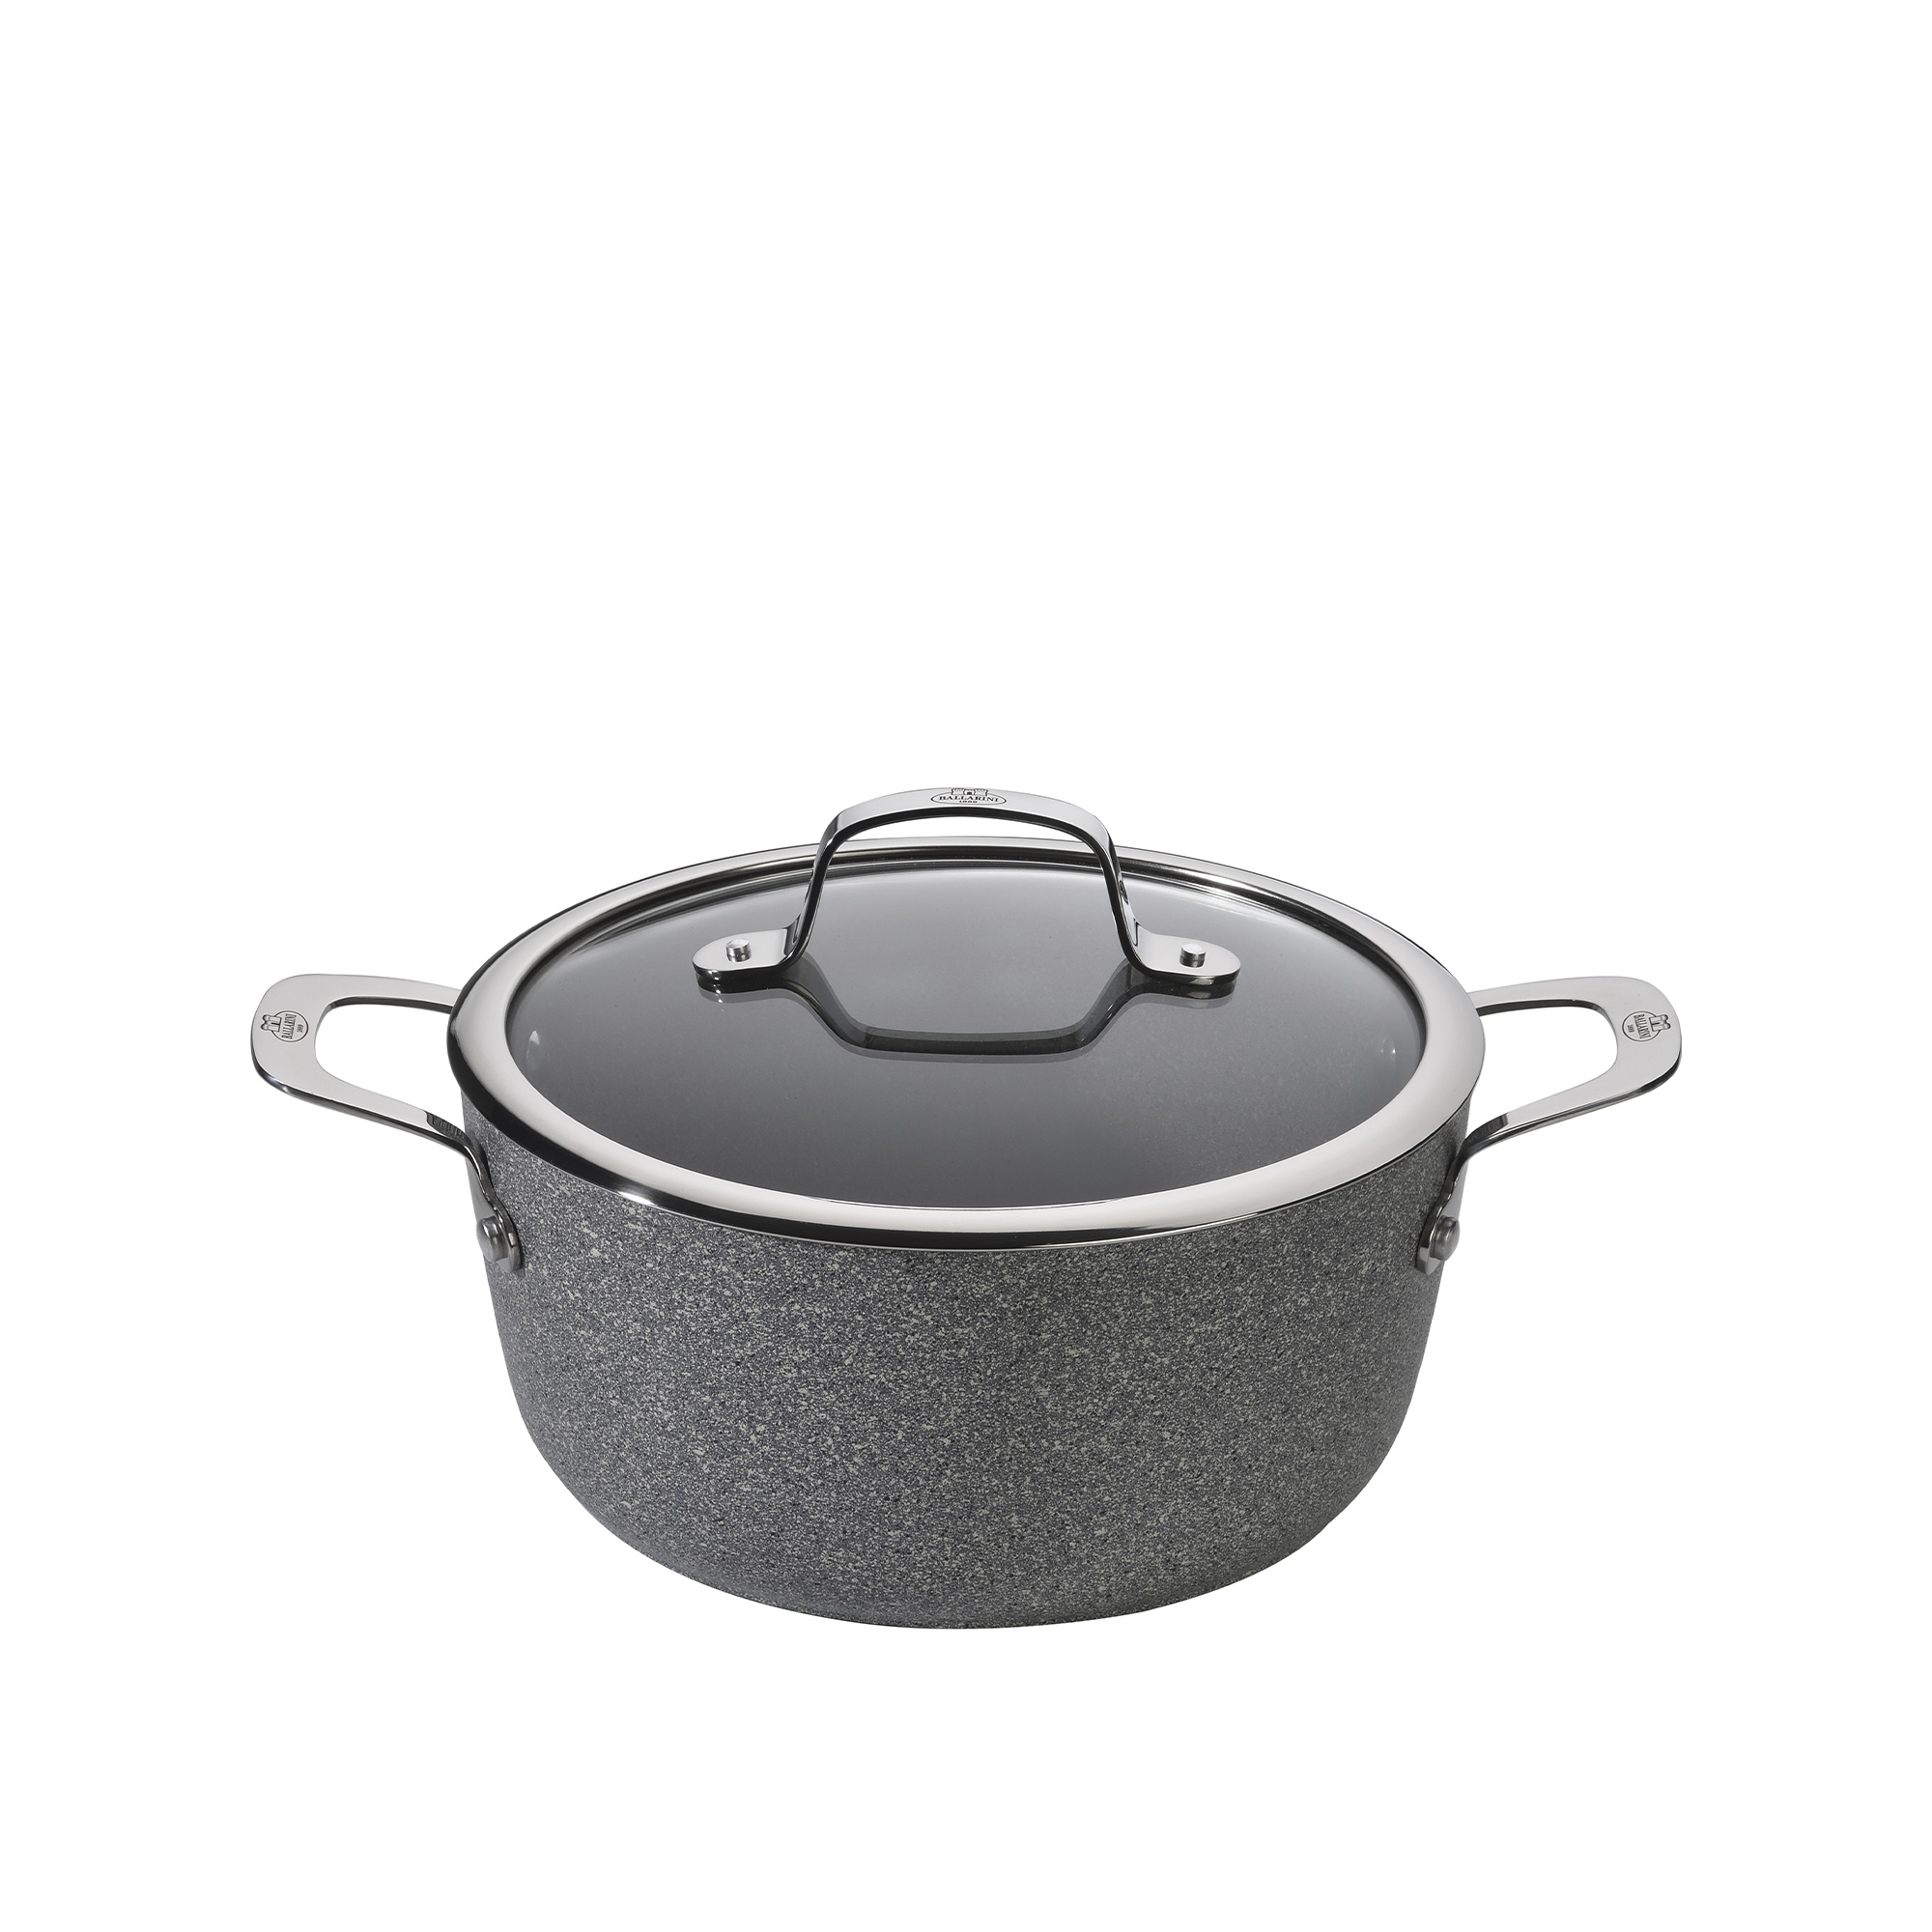 Ballarini - Cooking pot with lid - Salina granitium